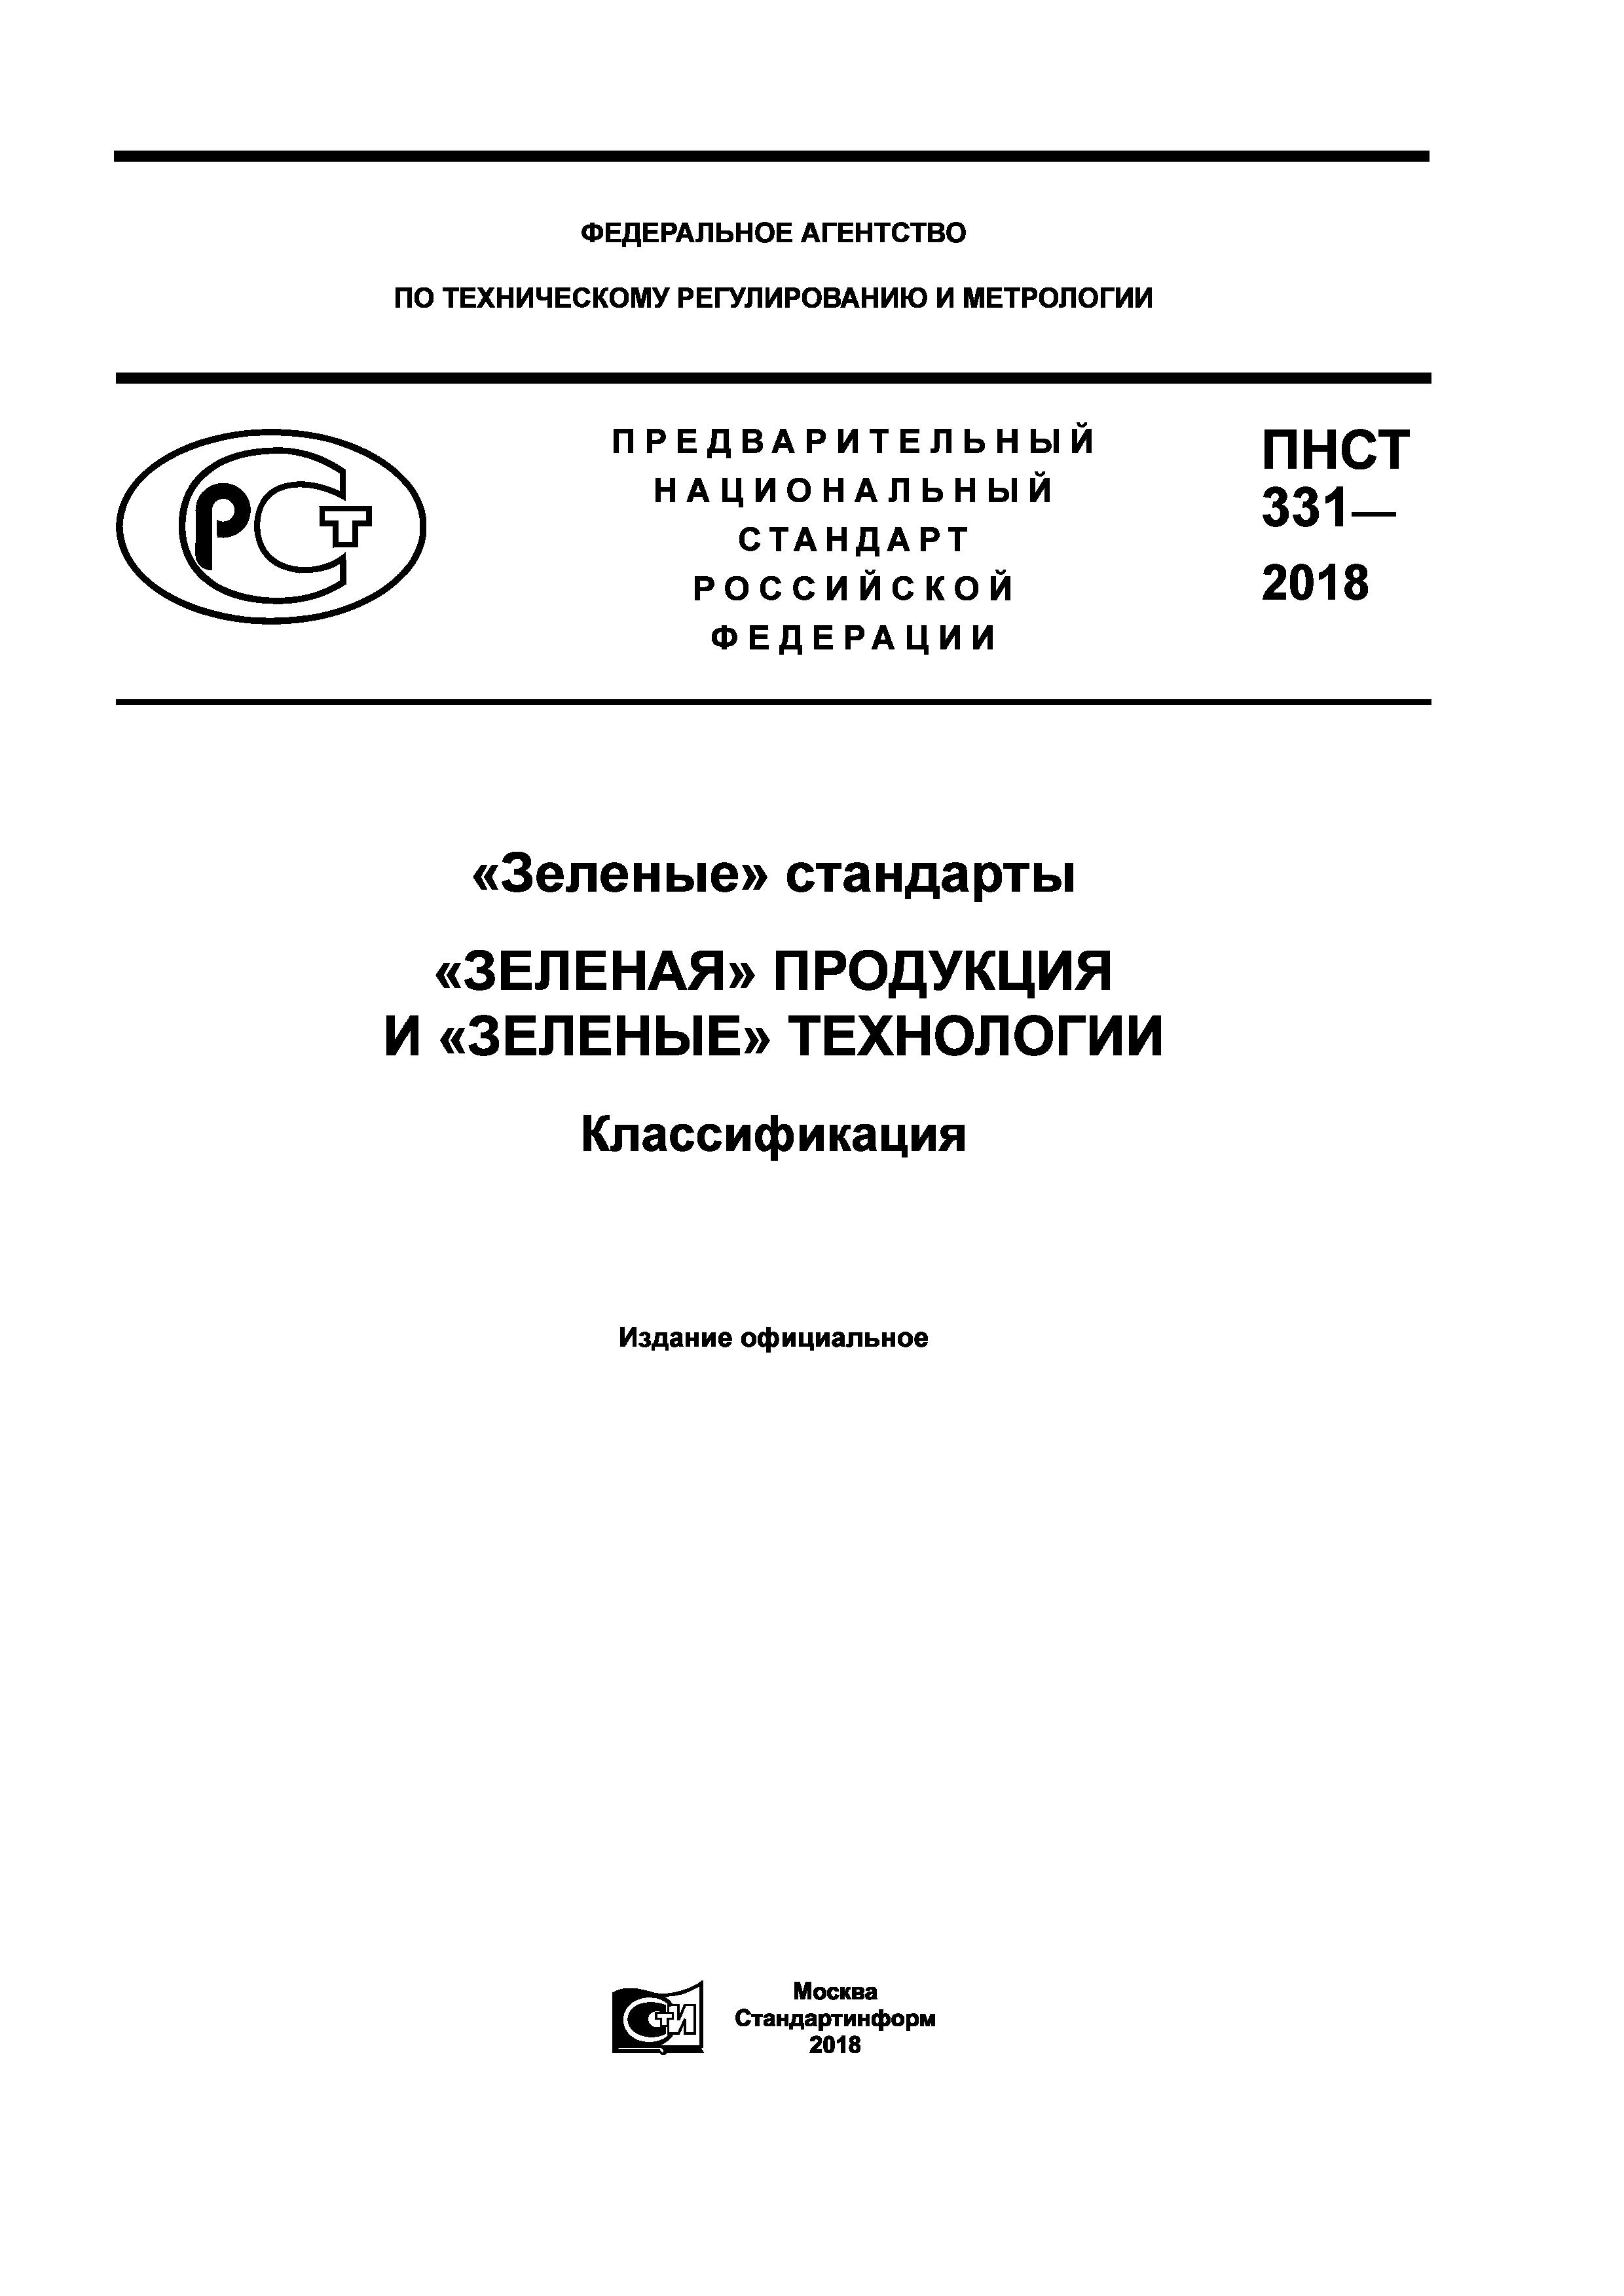 ПНСТ 331-2018